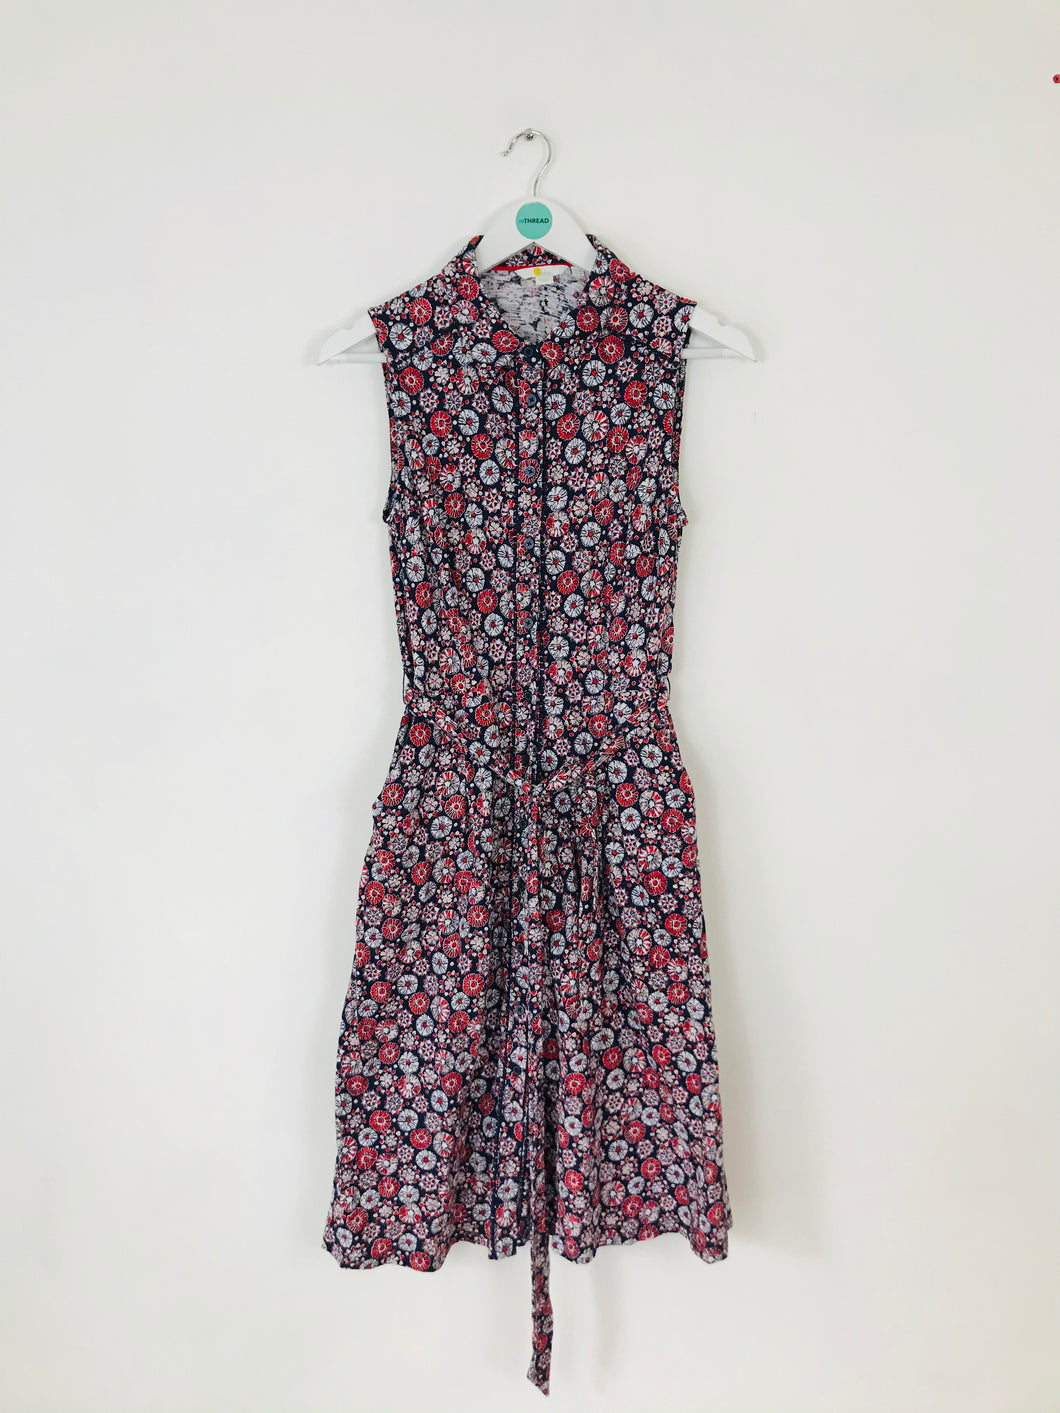 Boden Women’s Floral Button-Up Collar Dress | UK10 | Navy Blue Red